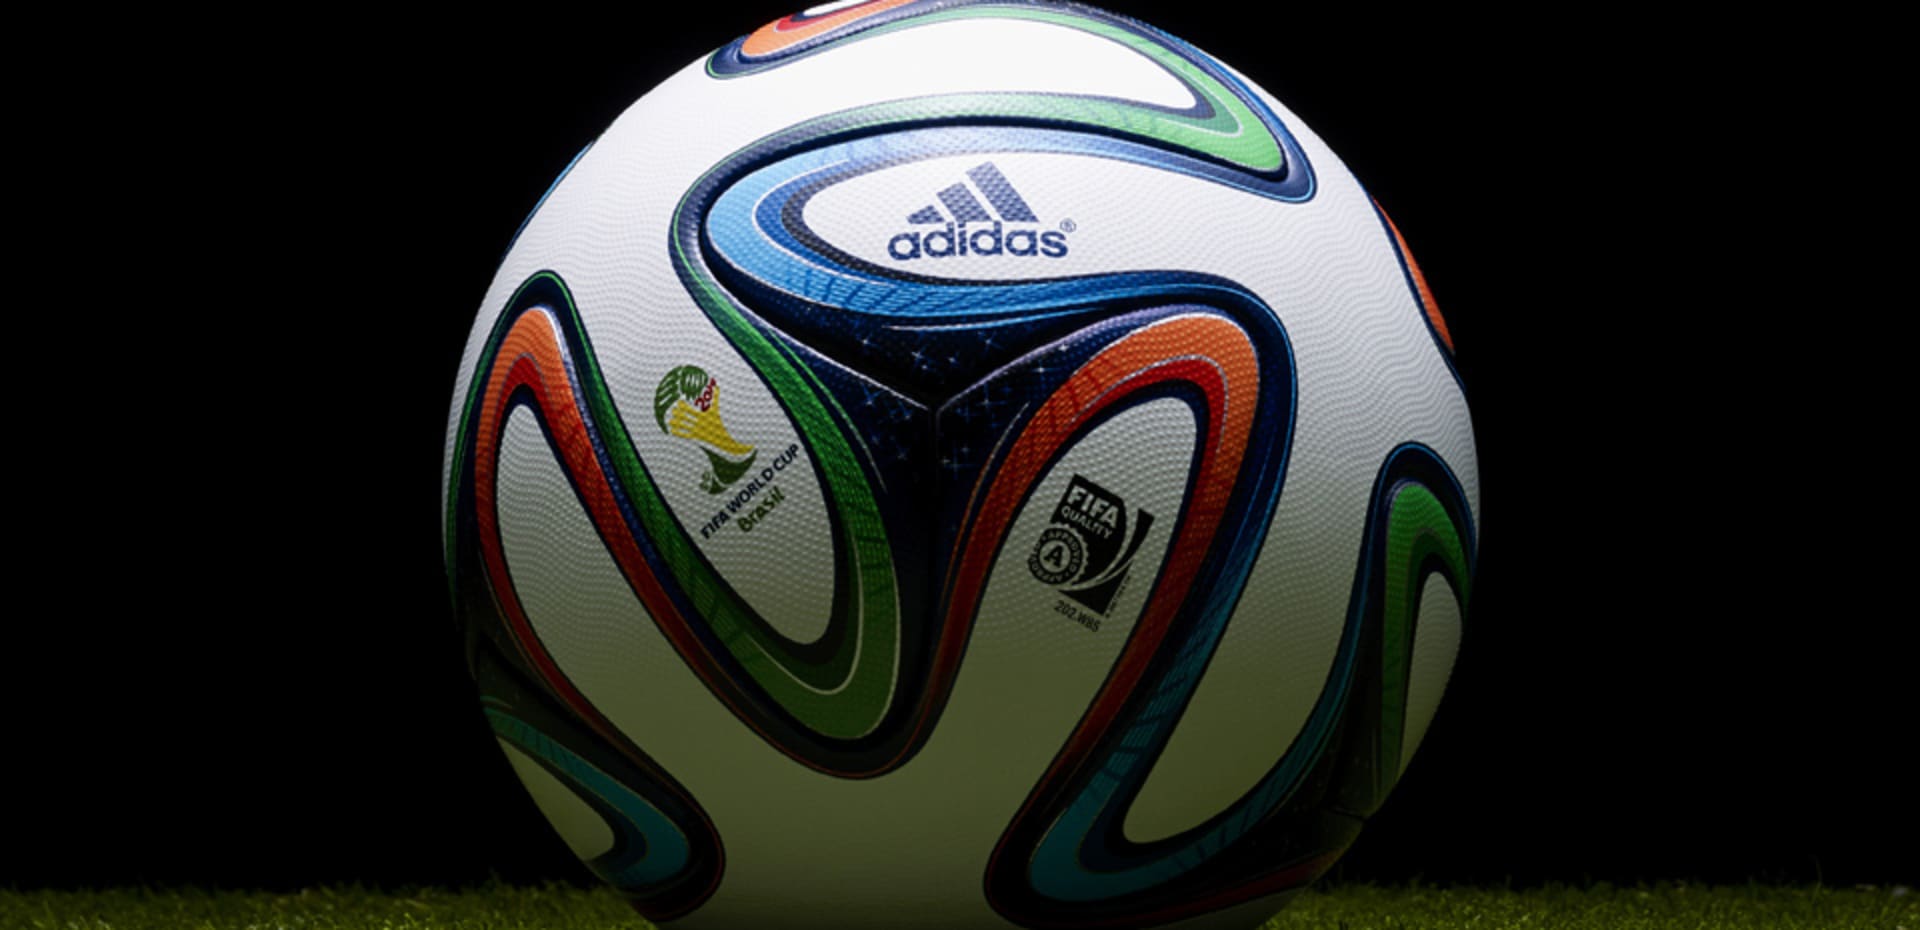 Oficiální míč pro FIFA Mistrovství světa ve fotbale 2014